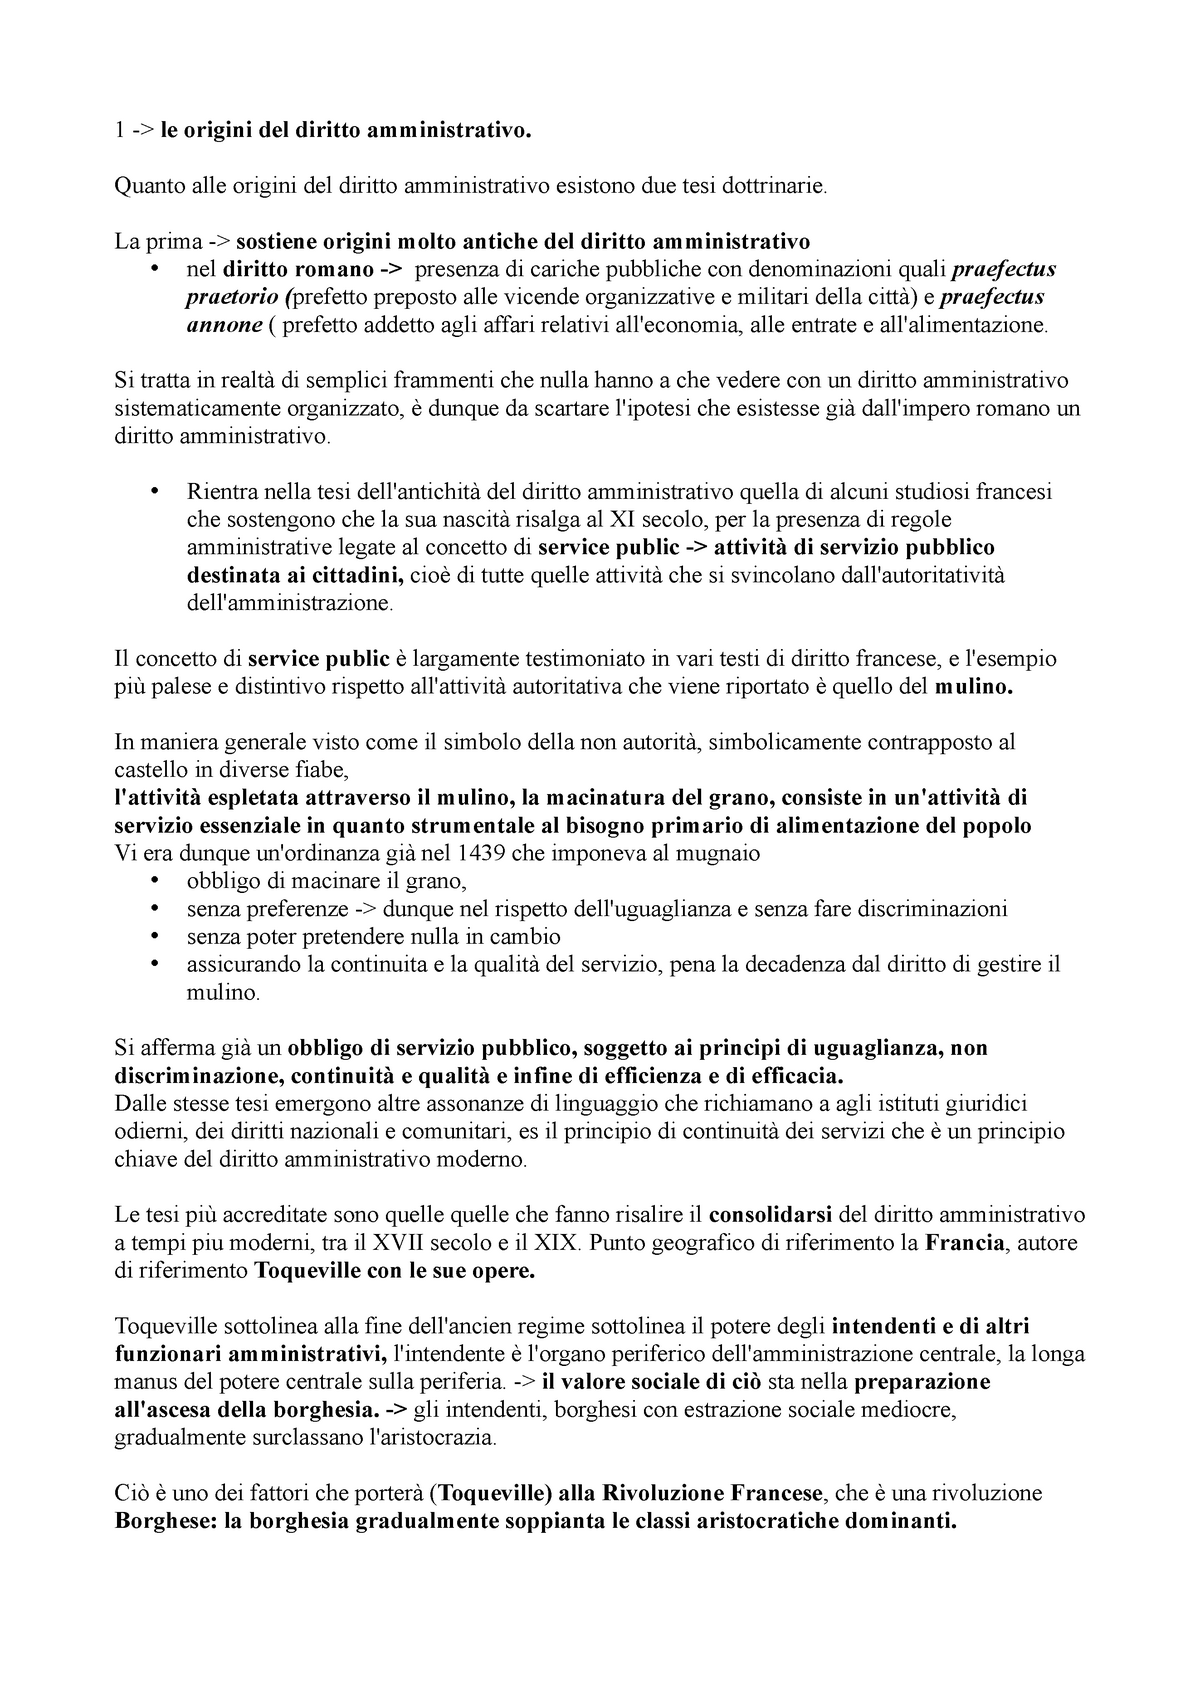 Lezioni di diritto amministrativo d'Alberti - Diritto amministrativo i ...